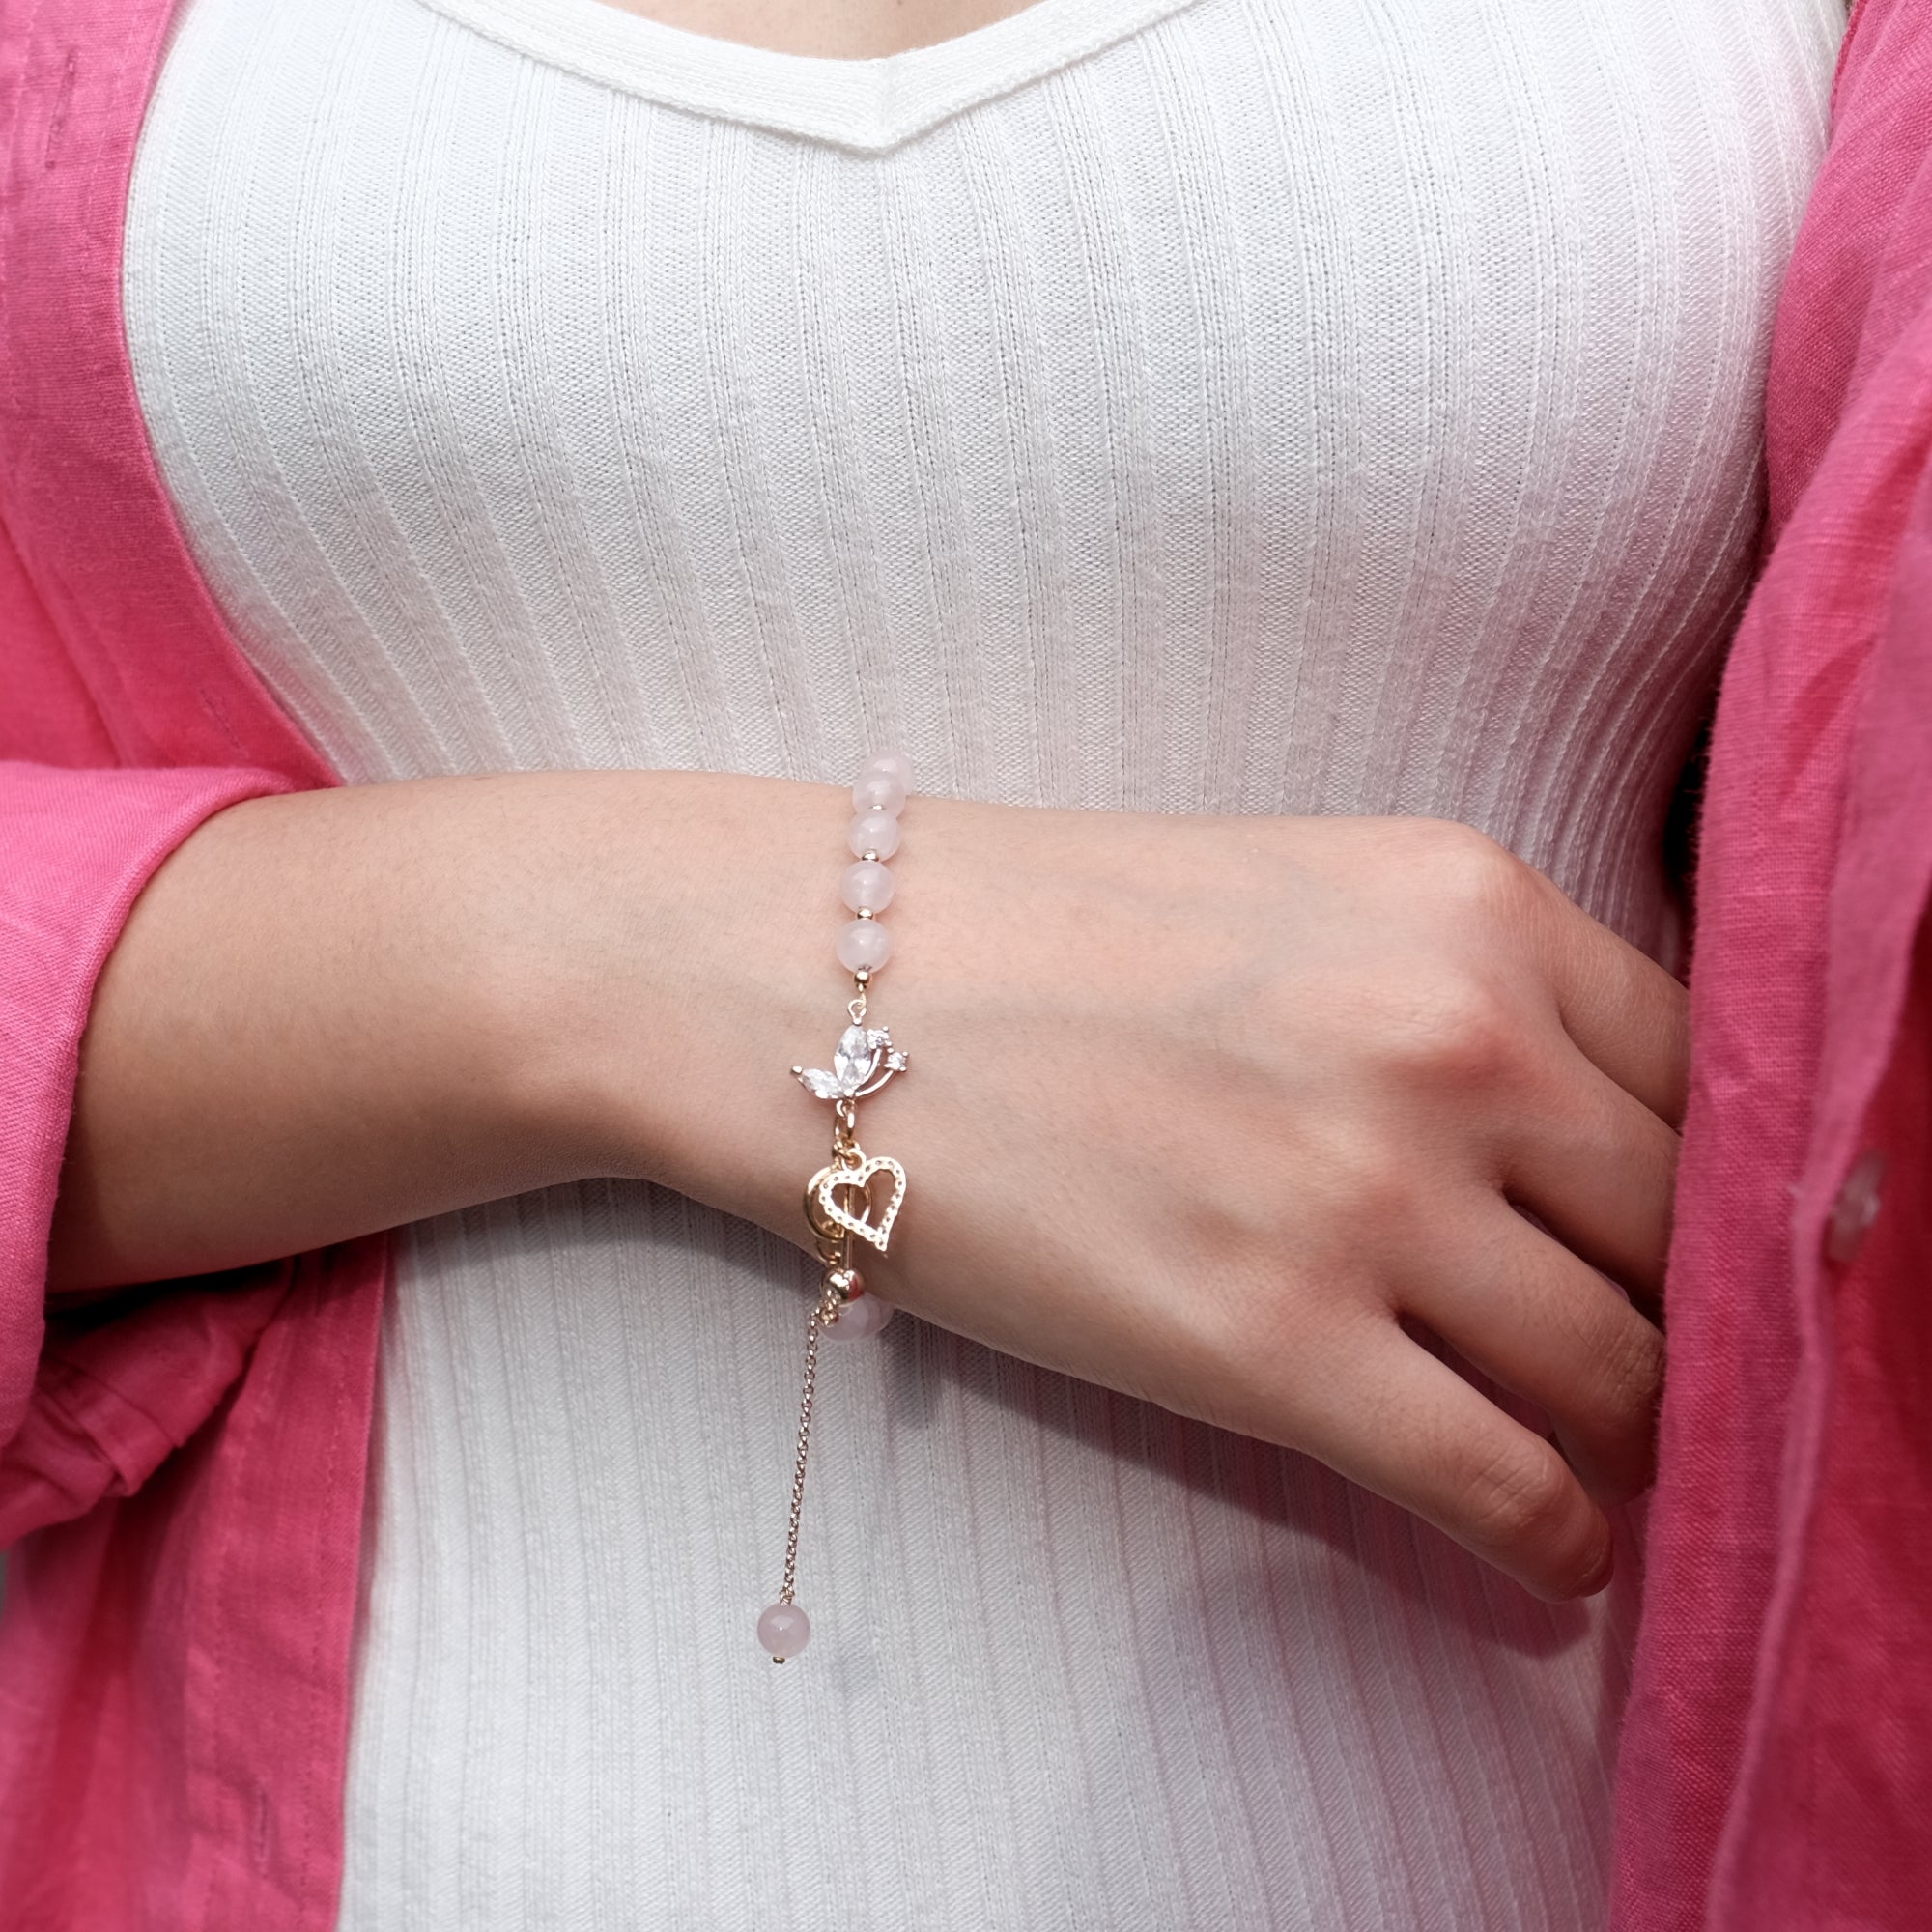 Rose Quartz Bracelet ,Pink Rose Quartz Gold filled & Sterling Silver Heart Charm  bracelet, Love Bracelet, Dainty Rose Quartz Bracelet